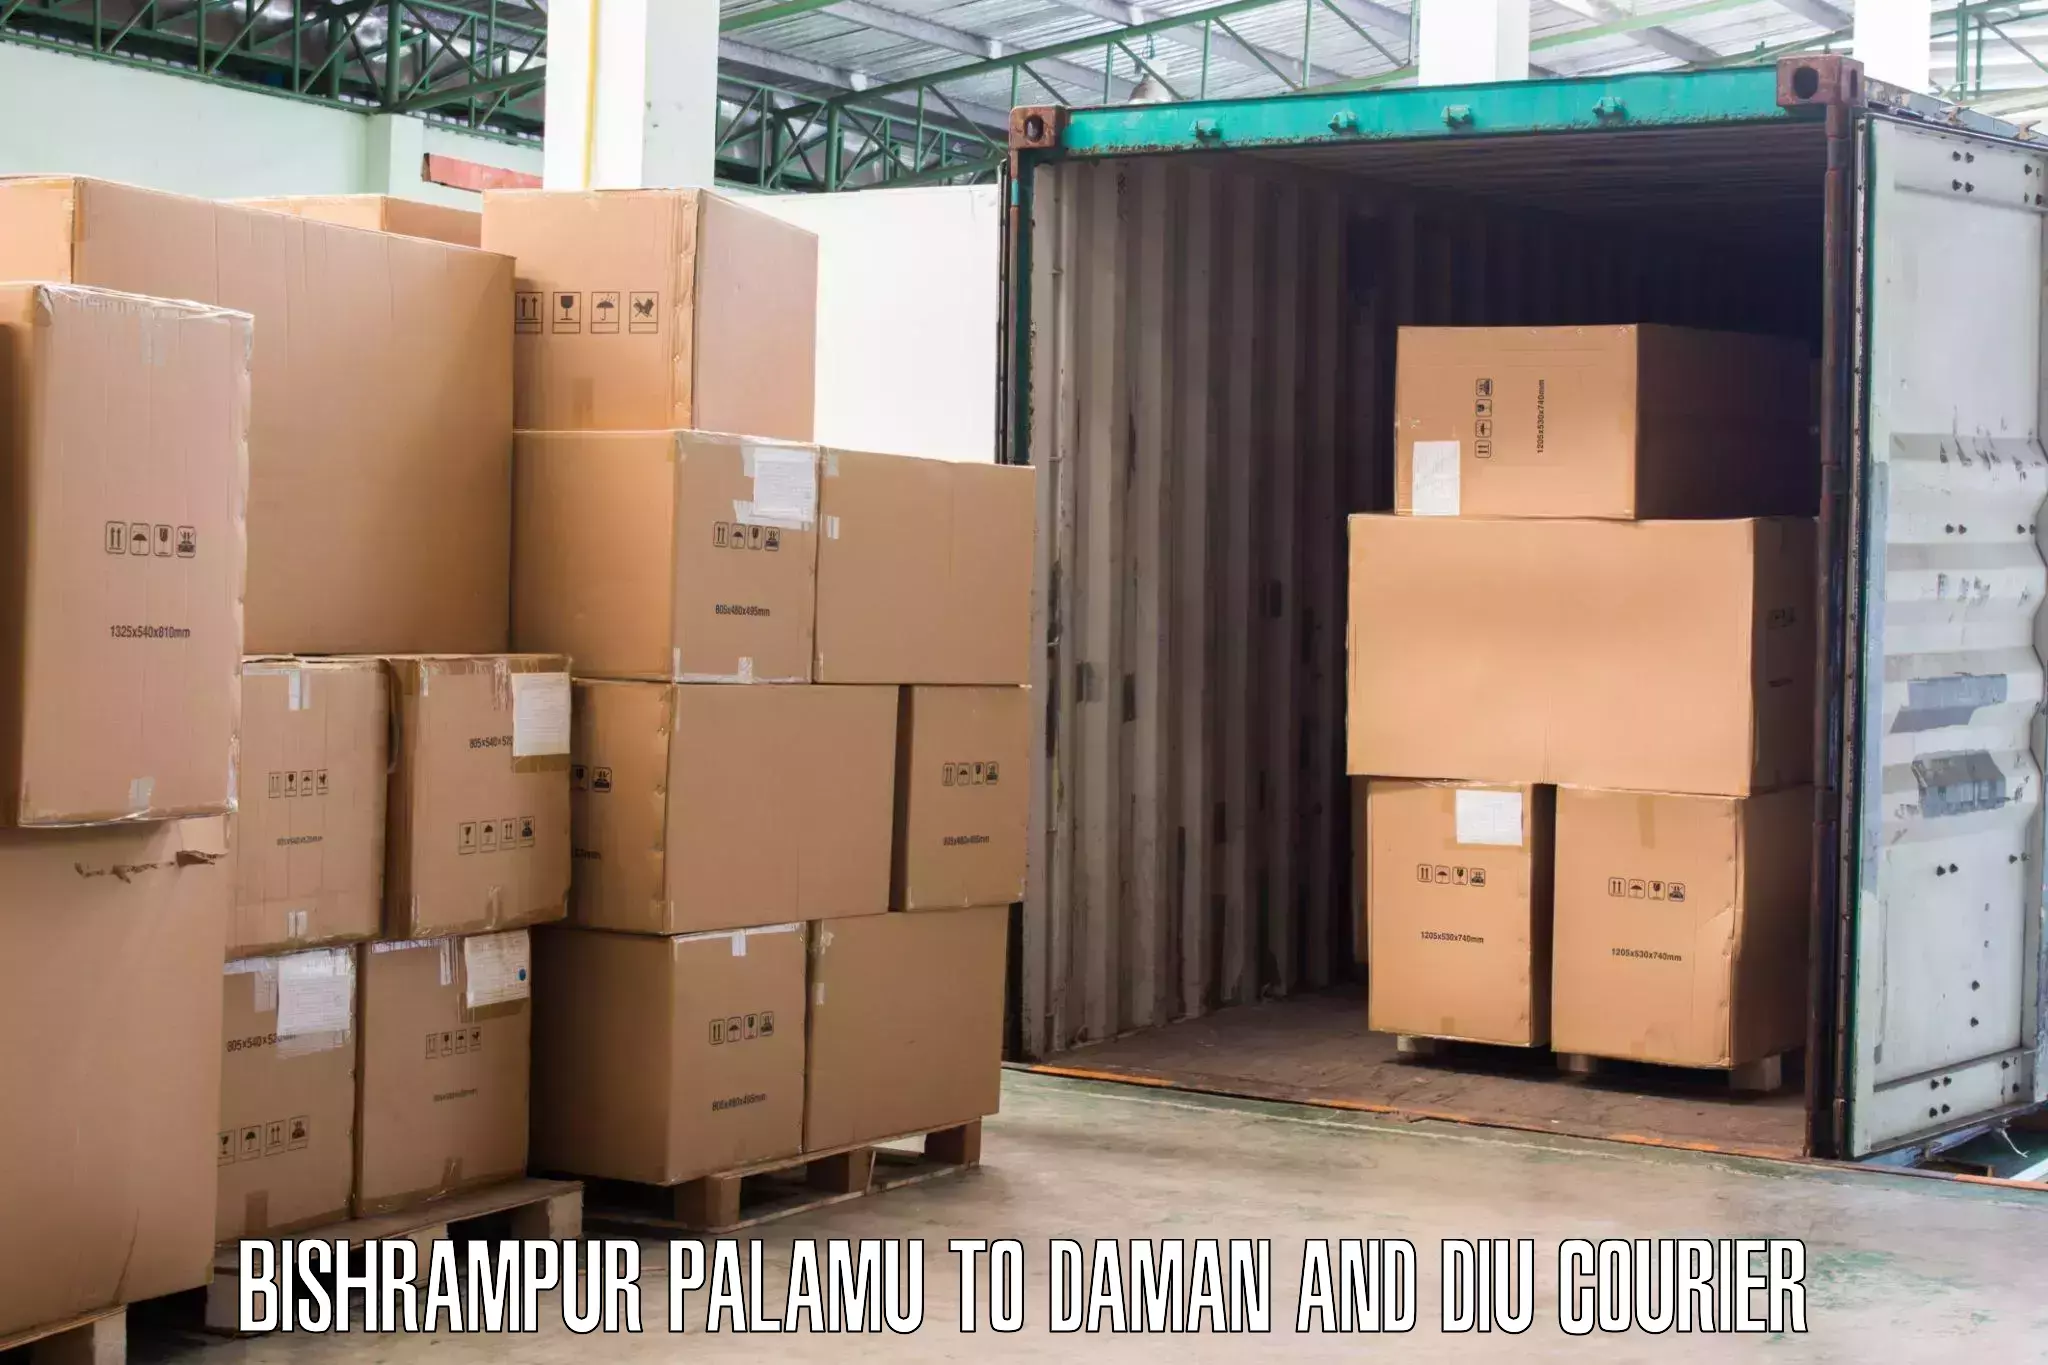 Furniture delivery service Bishrampur Palamu to Diu